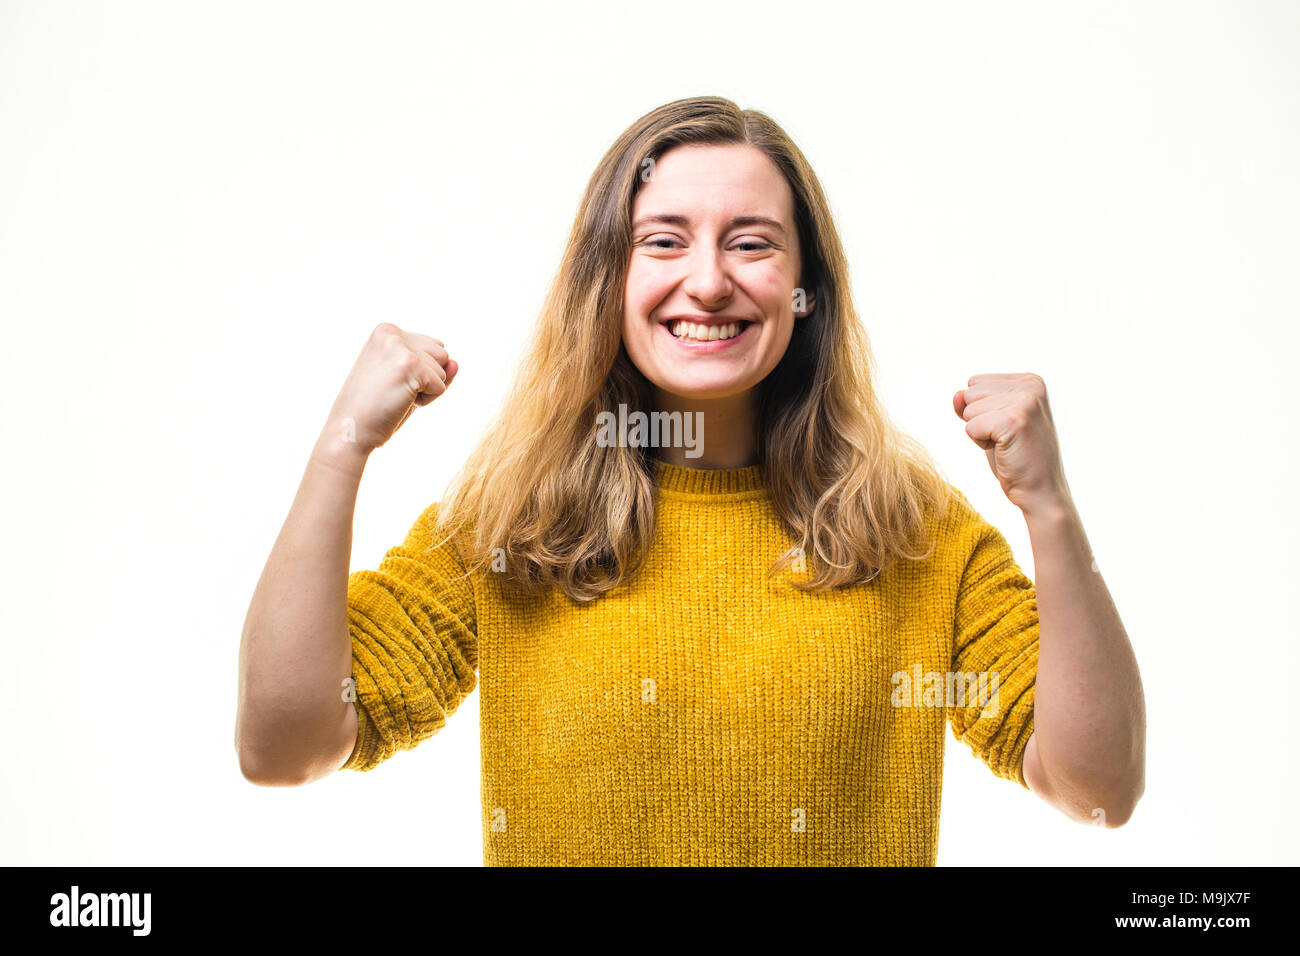 Erfolge feiern - ein glückliches Lächeln positive begeisterten jungen kaukasischen Frau Mädchen, pumpen ihre Fäuste in Ausgelassenheit, voller Leidenschaft und Engagement - Großbritannien Stockfoto